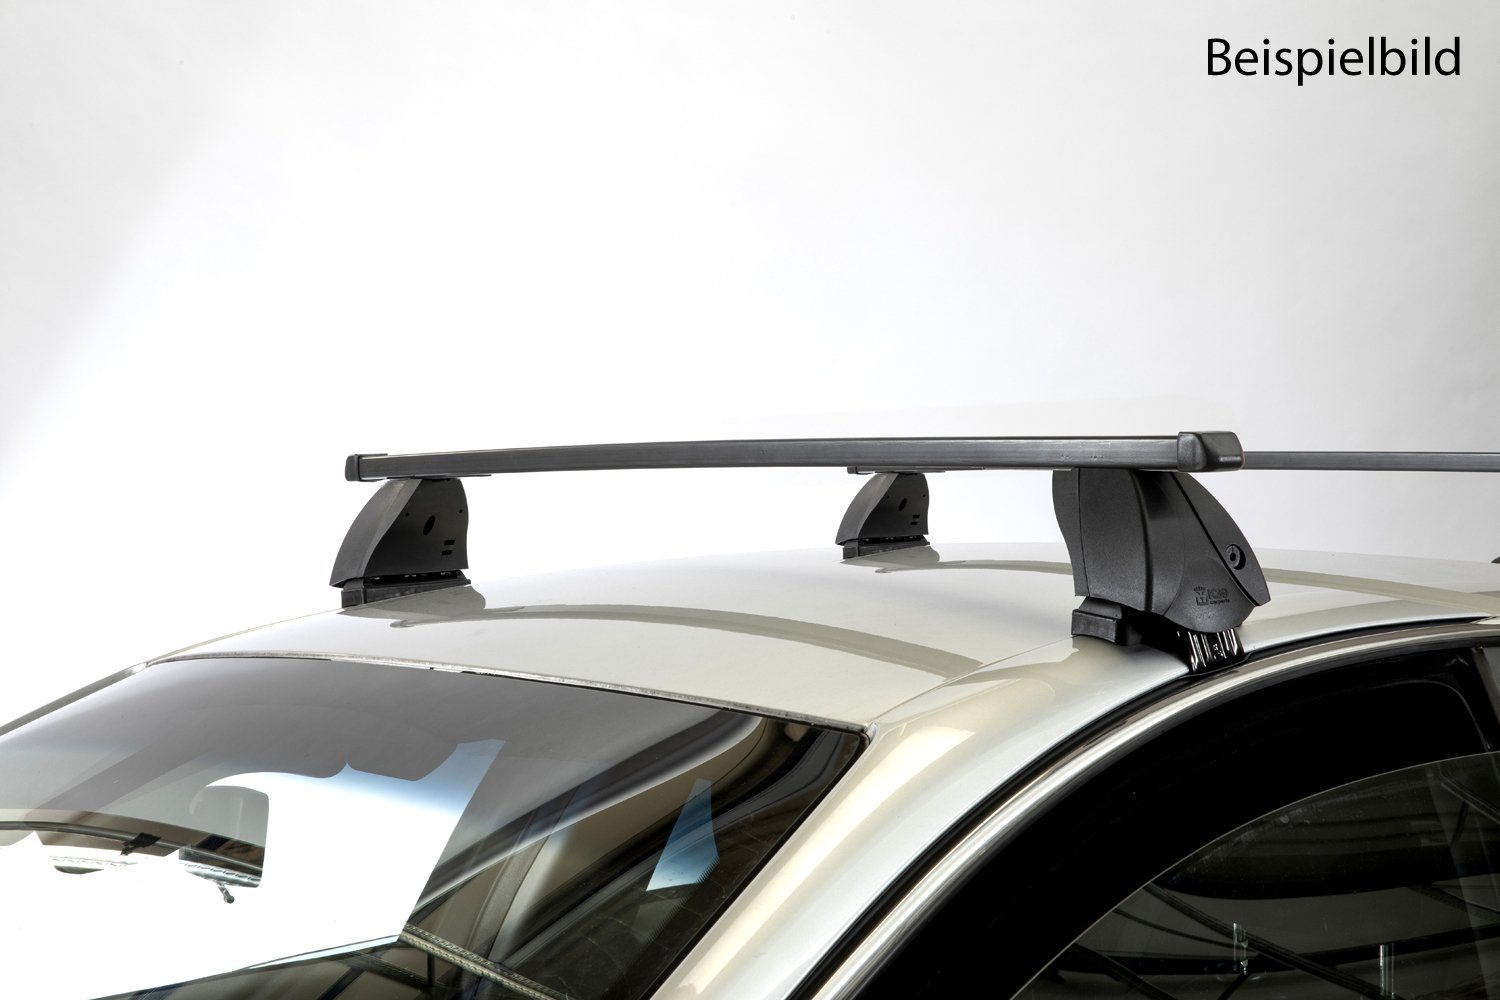 VDP Dachträger (Passend für Ihren Seat Ibiza III (3Türer) 02-09.PERFEKT ABGESTIMMT - Der Träger ist passgenau für Ihr Fahrzeug (Maße: 1120 x 30 x 20 mm).MAXIMALER KOMFORT - Schaffen Sie auf langen Fahrten mehr Platz für Ihre Familie und Freunde im Innenraum des Fahrzeugs und nutzen Sie das Dach.DESIGN - Ein Träger mit aerodynamischem Querschnitt.EINFACHE HANDHABUNG - Der Träger ist leicht auf- und abzumontieren), Dachträger K1 MEDIUM kompatibel mit Seat Ibiza III (3Türer) 02-09